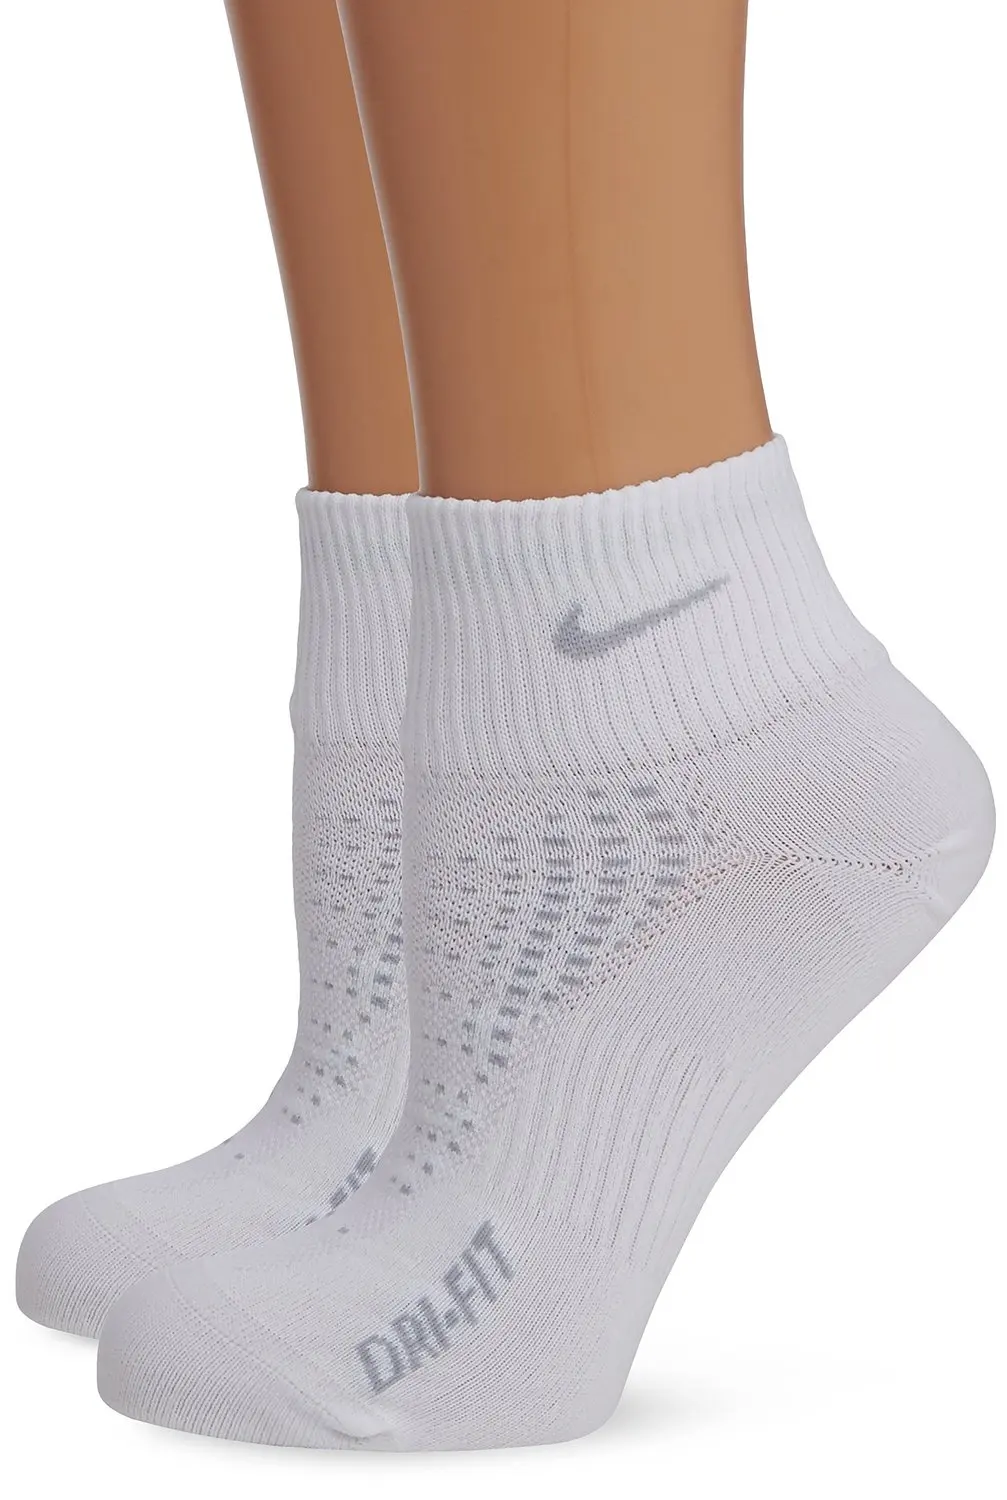 nike anti blister quarter running socks